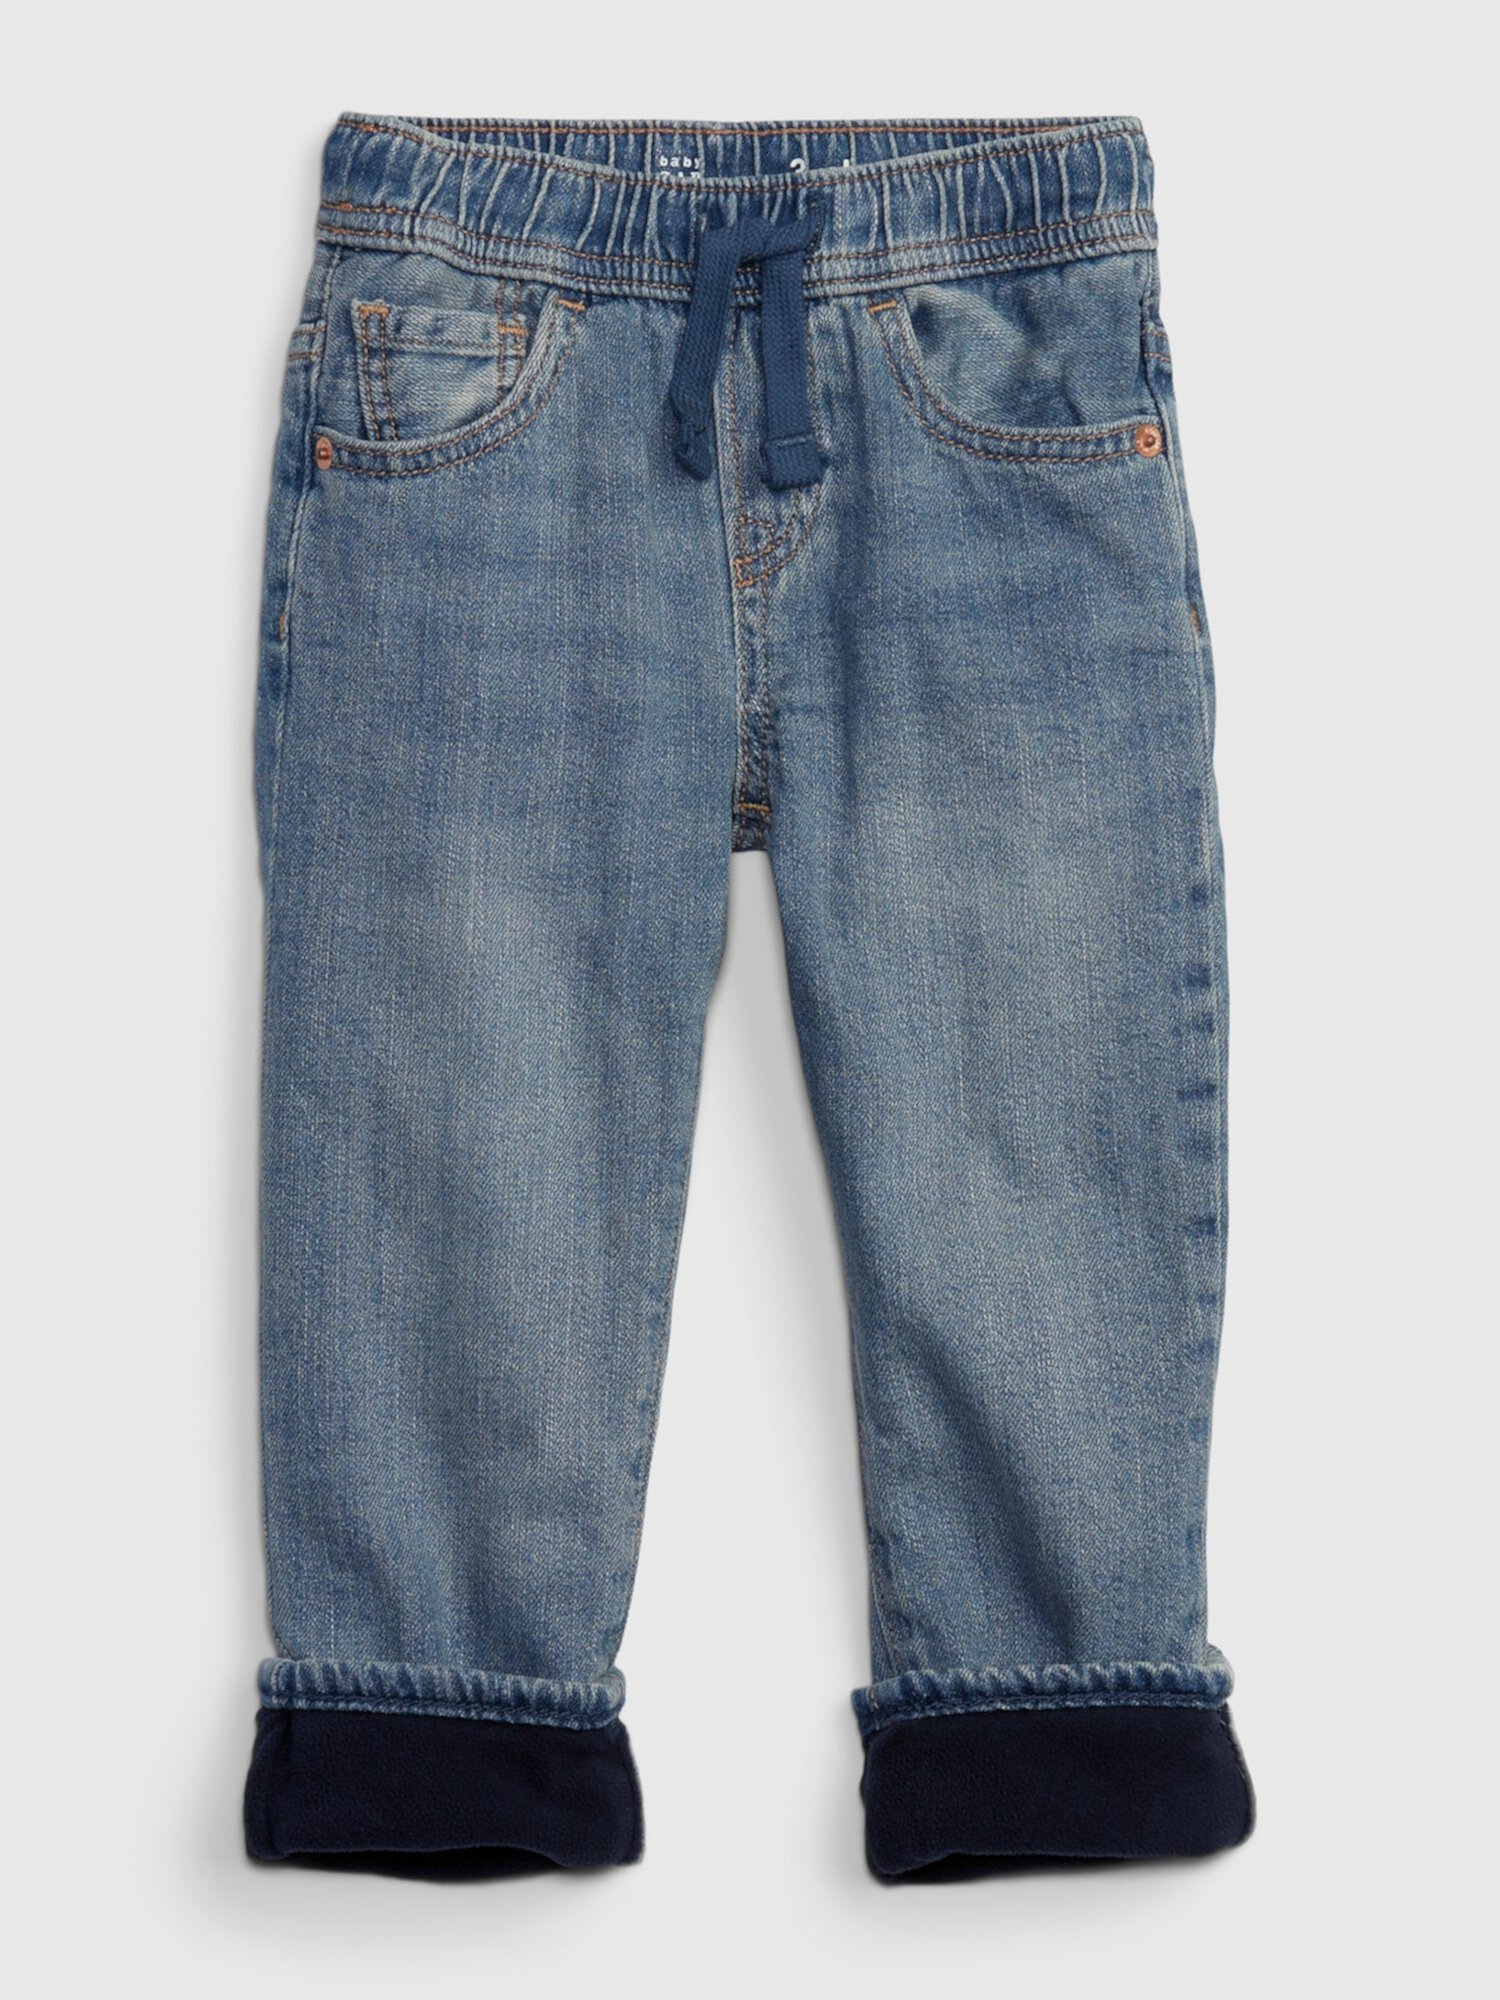 Узкие джинсы для малышей с подкладкой из флиса и тканью Washwell Gap